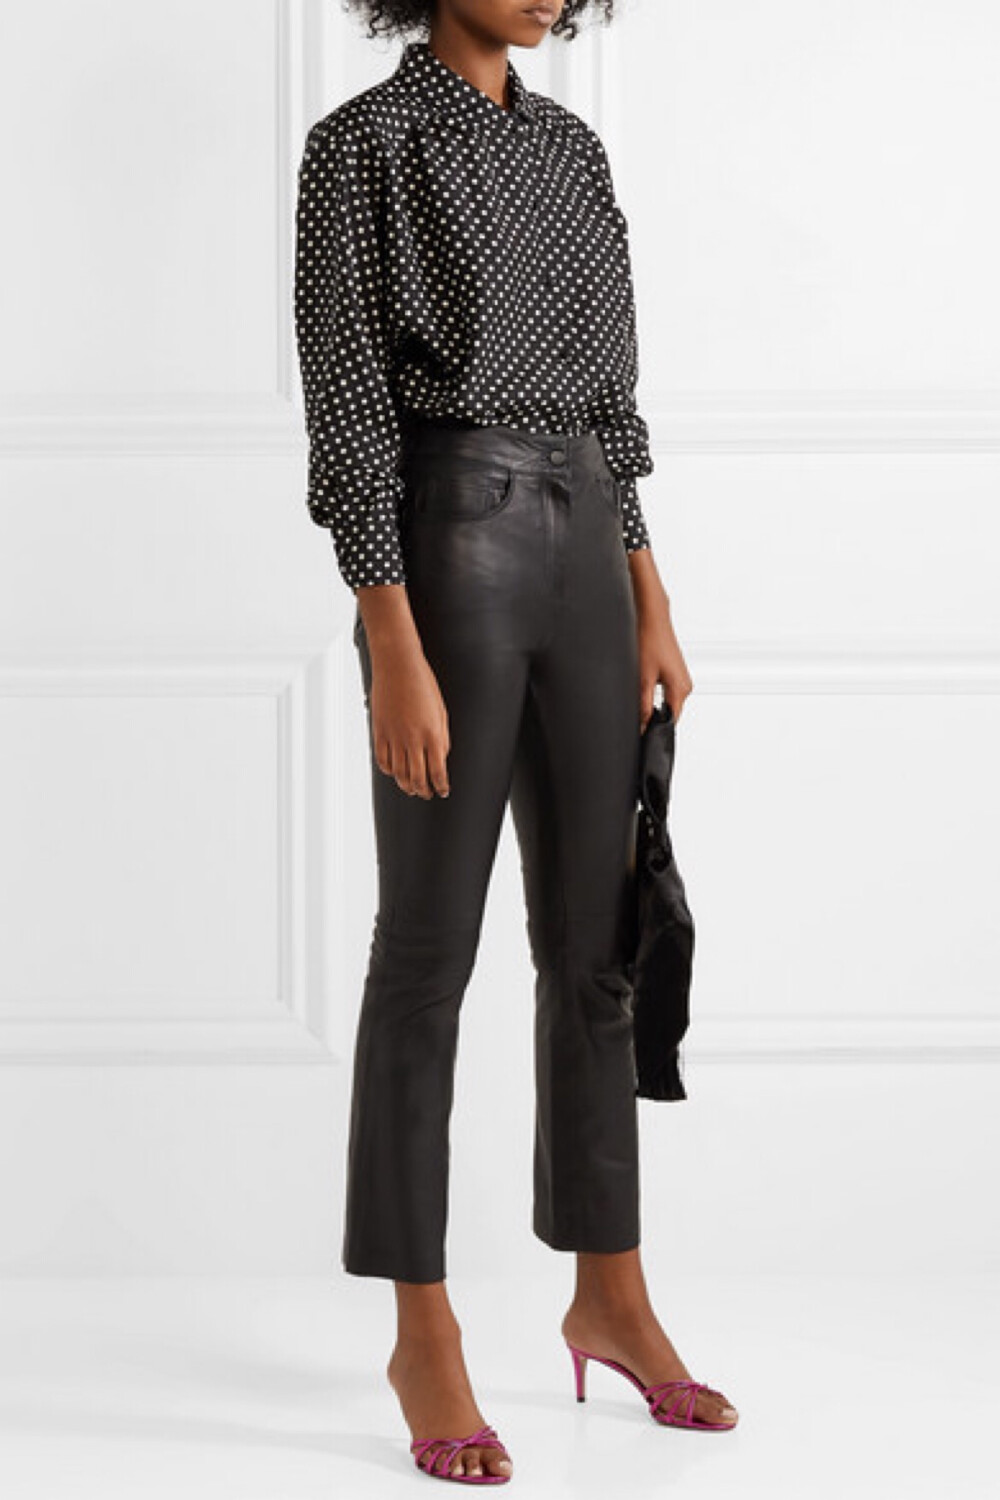 Marc Jacobs 向来对波点情有独钟，这款衬衫便是代表作之一，其本人更是在品牌 2019 春夏大秀上，身穿类似版本谢幕。单品采用顺滑的丝缎制成，宽大的衣袖和衣身背面的褶皱进一步凸显出它宽松的廓形。不妨参考秀场造型，以一抹张扬吸睛的眼影与之相配。